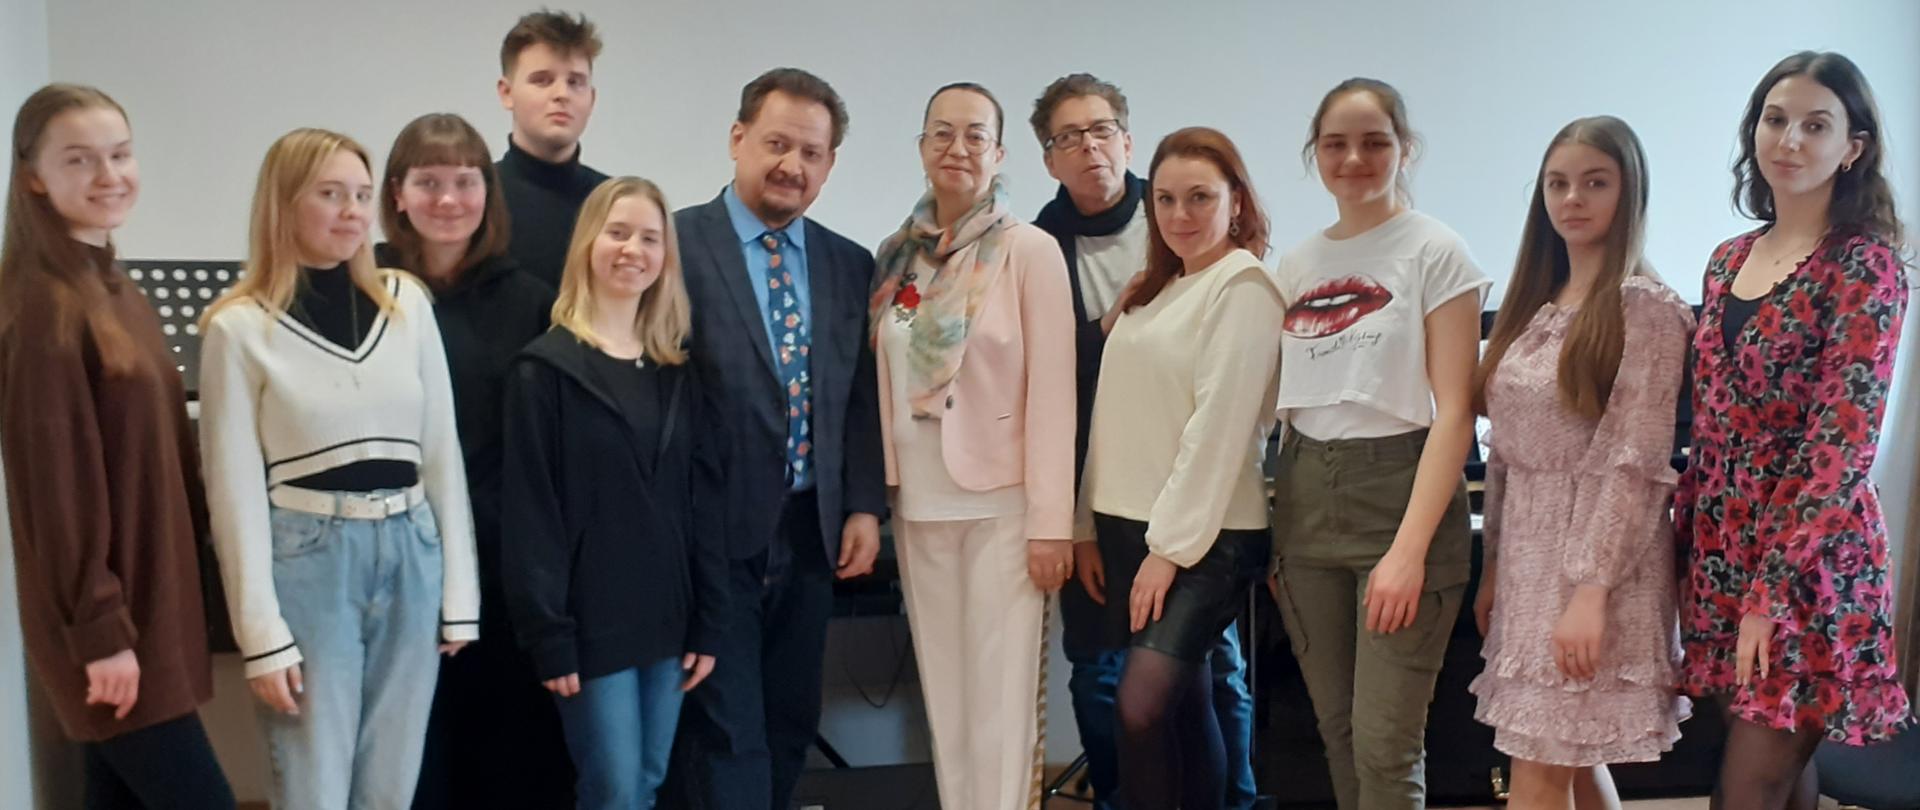 Na zdjęciu uczniowie wraz z prof. Aleksanderem Teligą i małżonką Haliną Teligą oraz dyrektor szkoły Jacek Nowosielski.